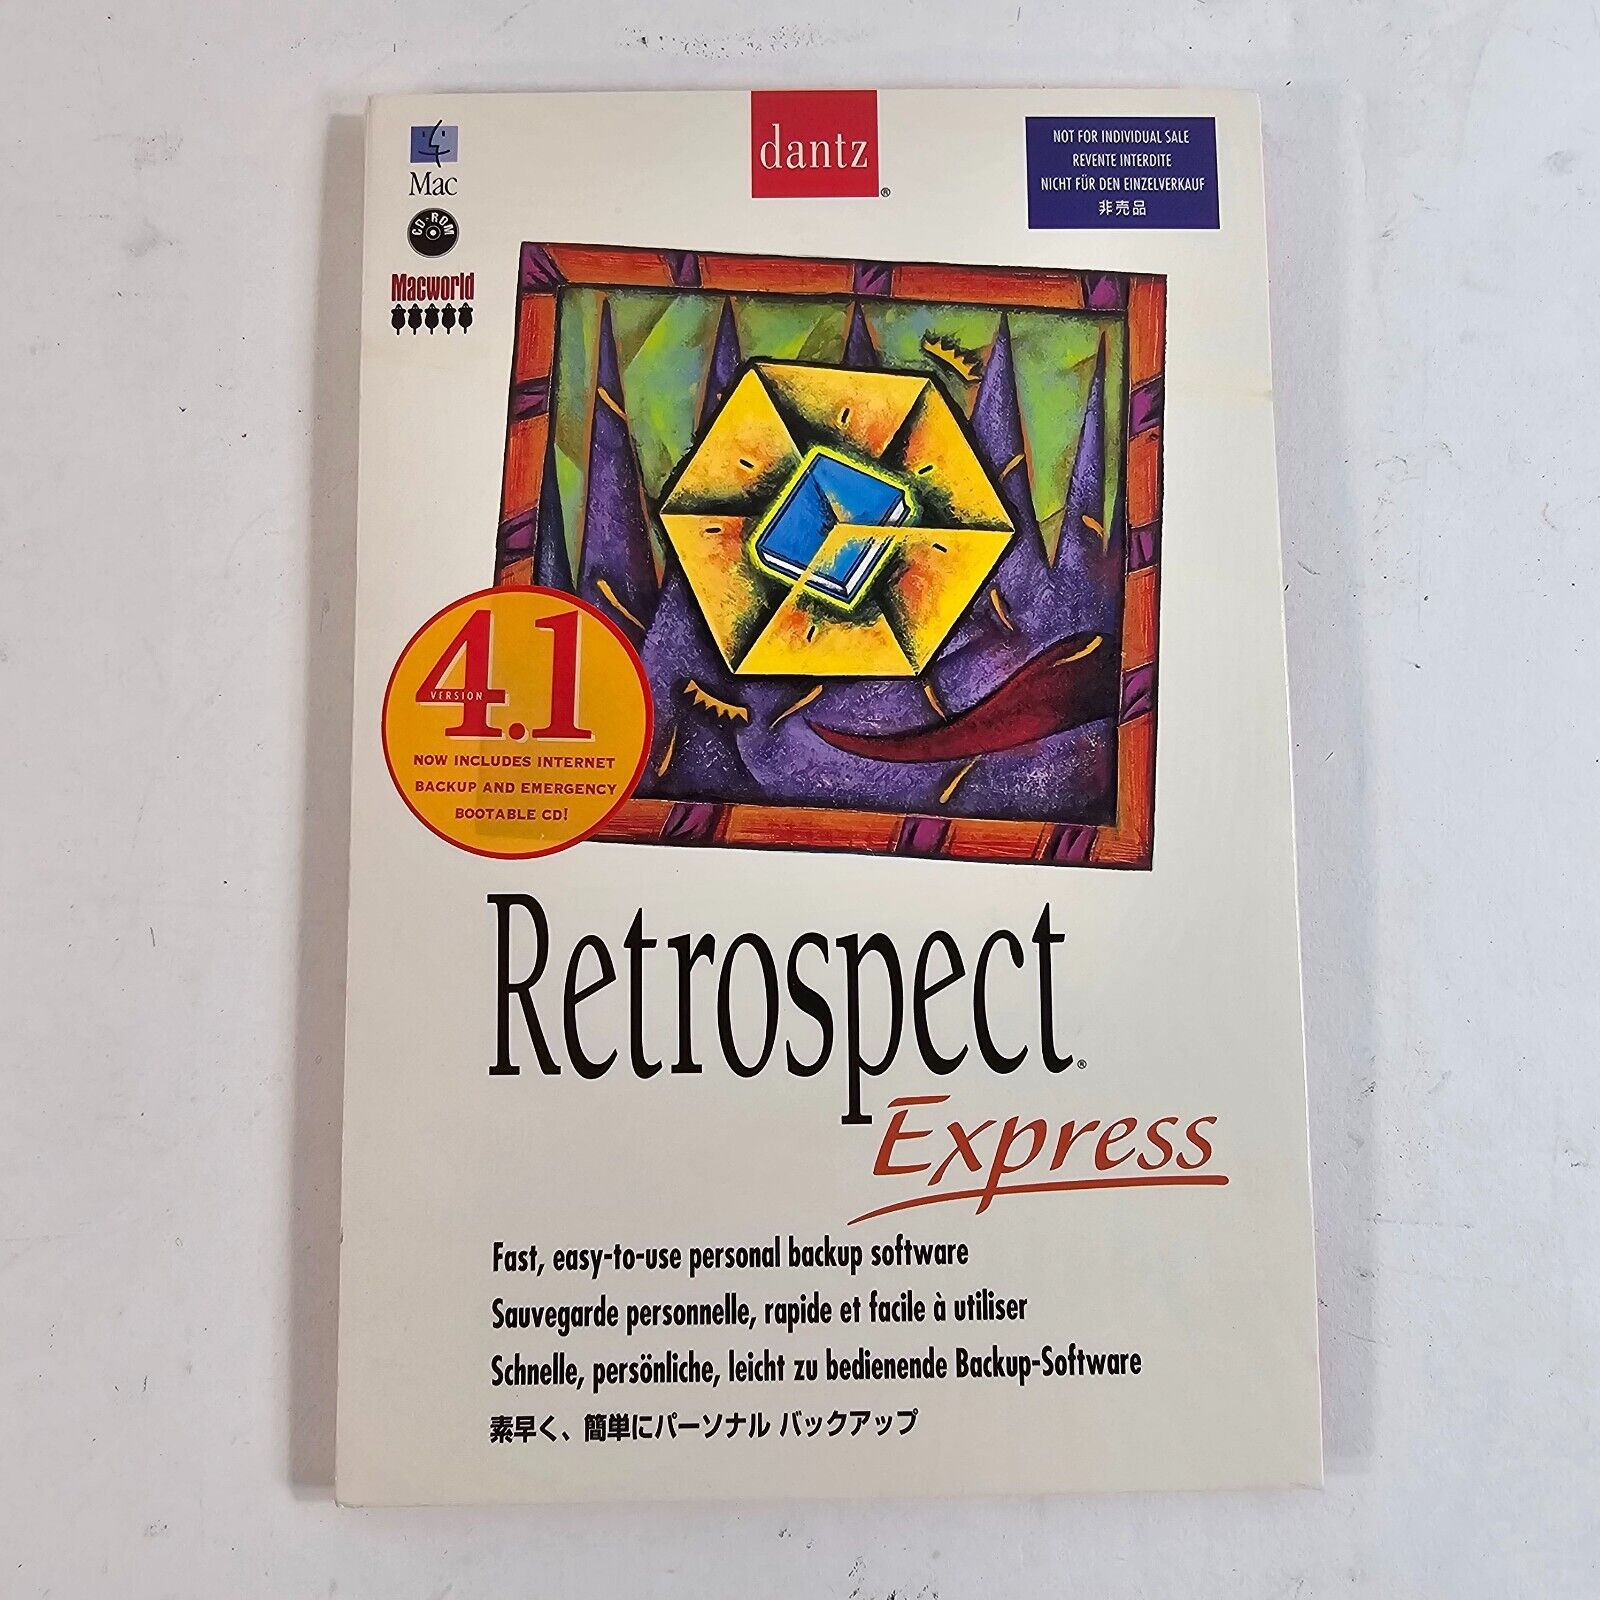 Dantz Retrospect Express 4.1  Vintage Software for Backing Up